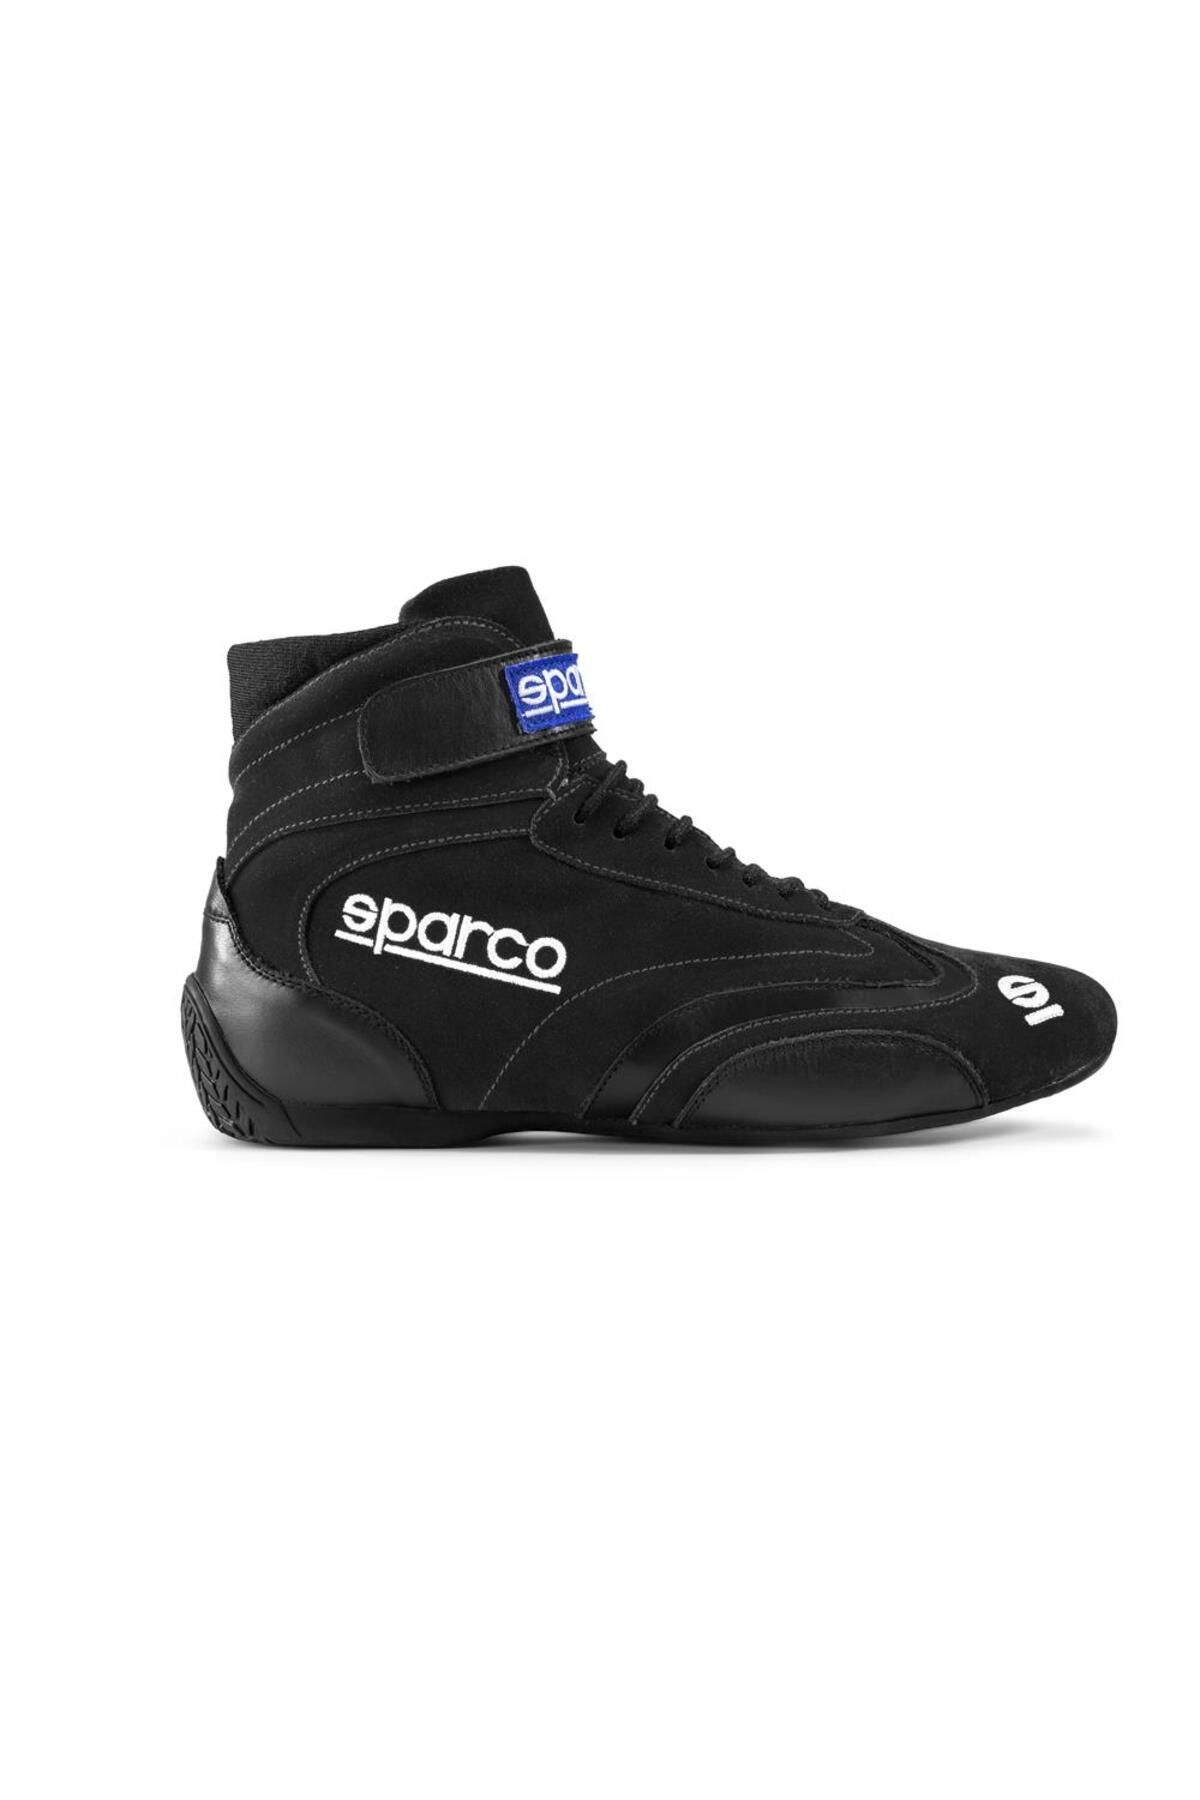 Sparco Top Yarış Ayakkabısı Fia Onaylı Siyah 41 Numara